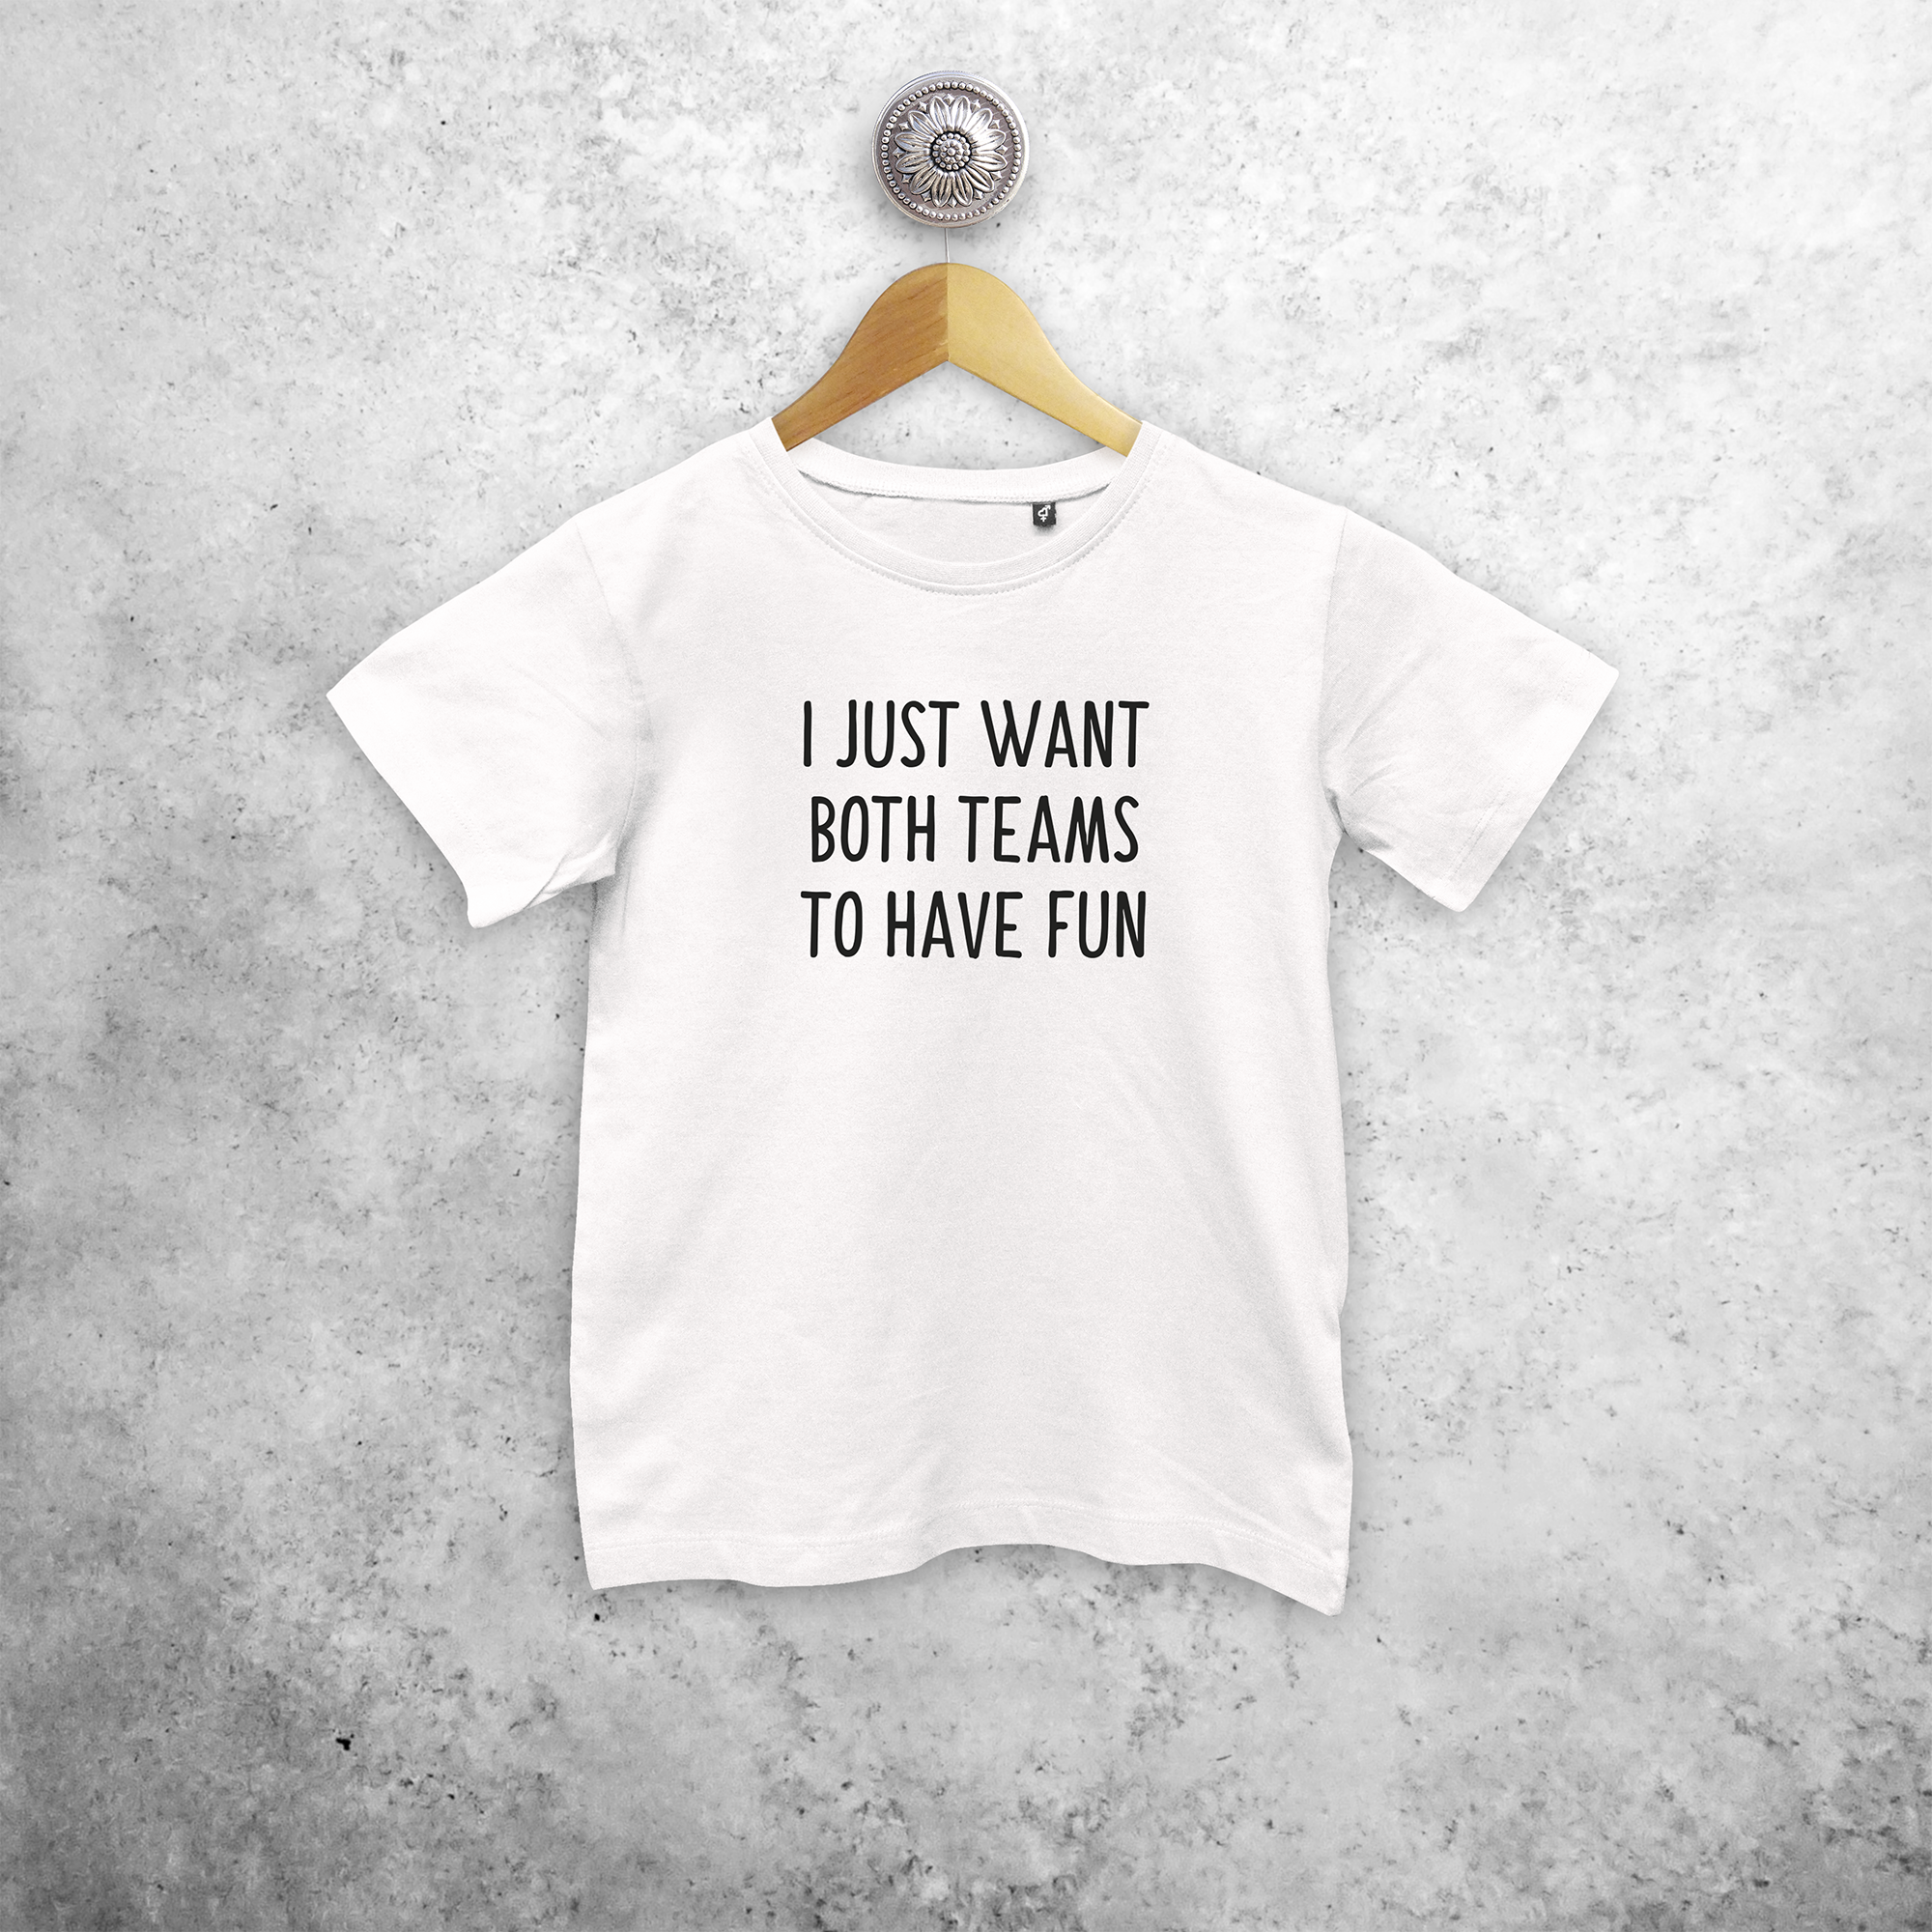 'I just want both teams to have fun' kids shortsleeve shirt